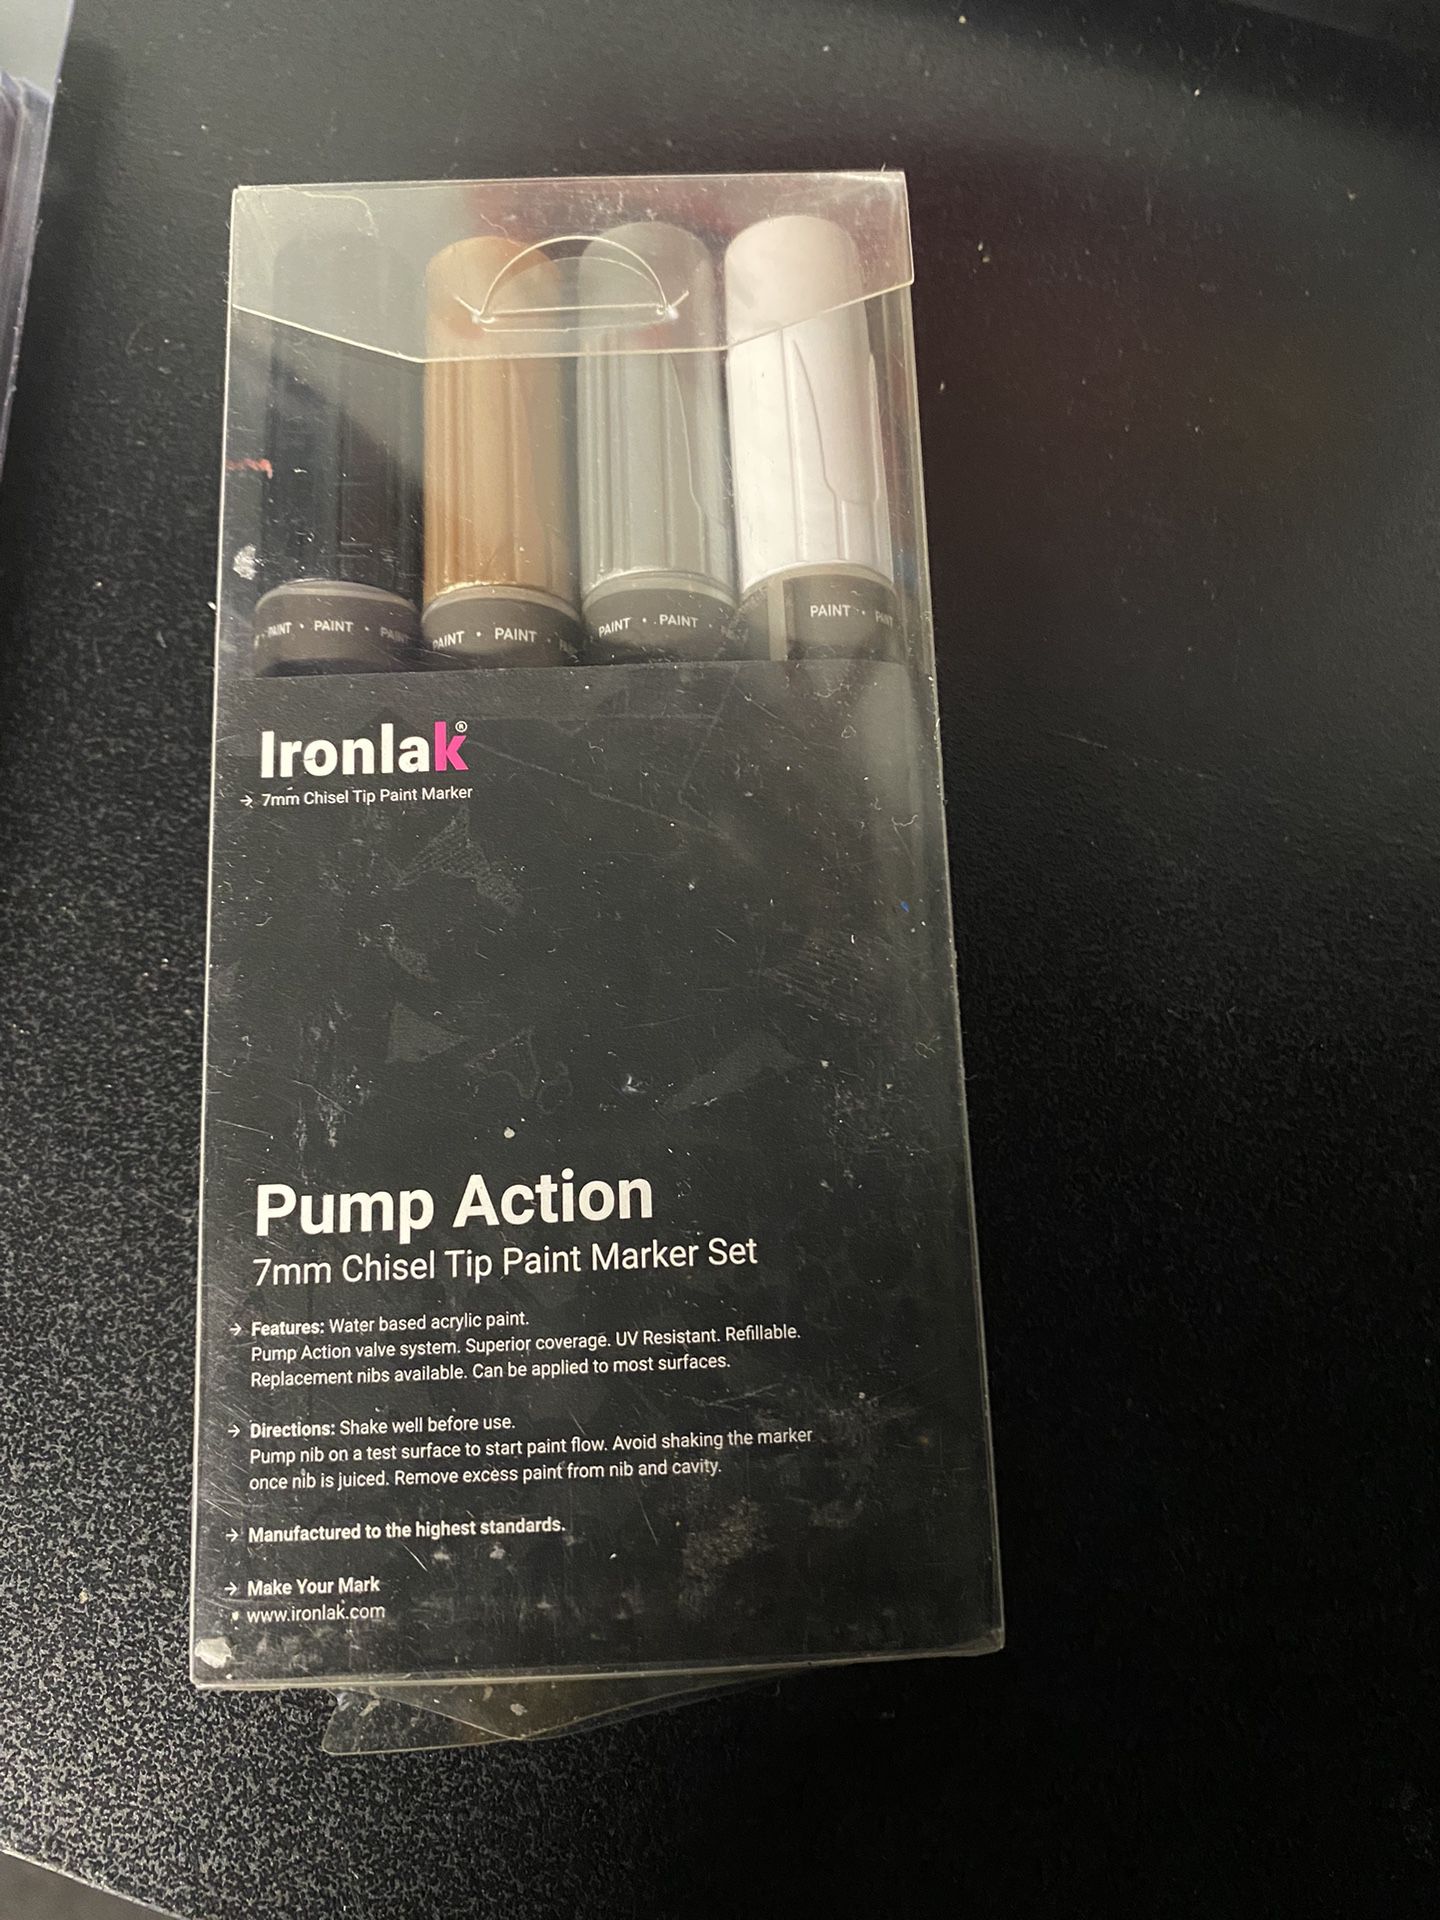 Ironlak pump action 7mm chisel tip paint marker set